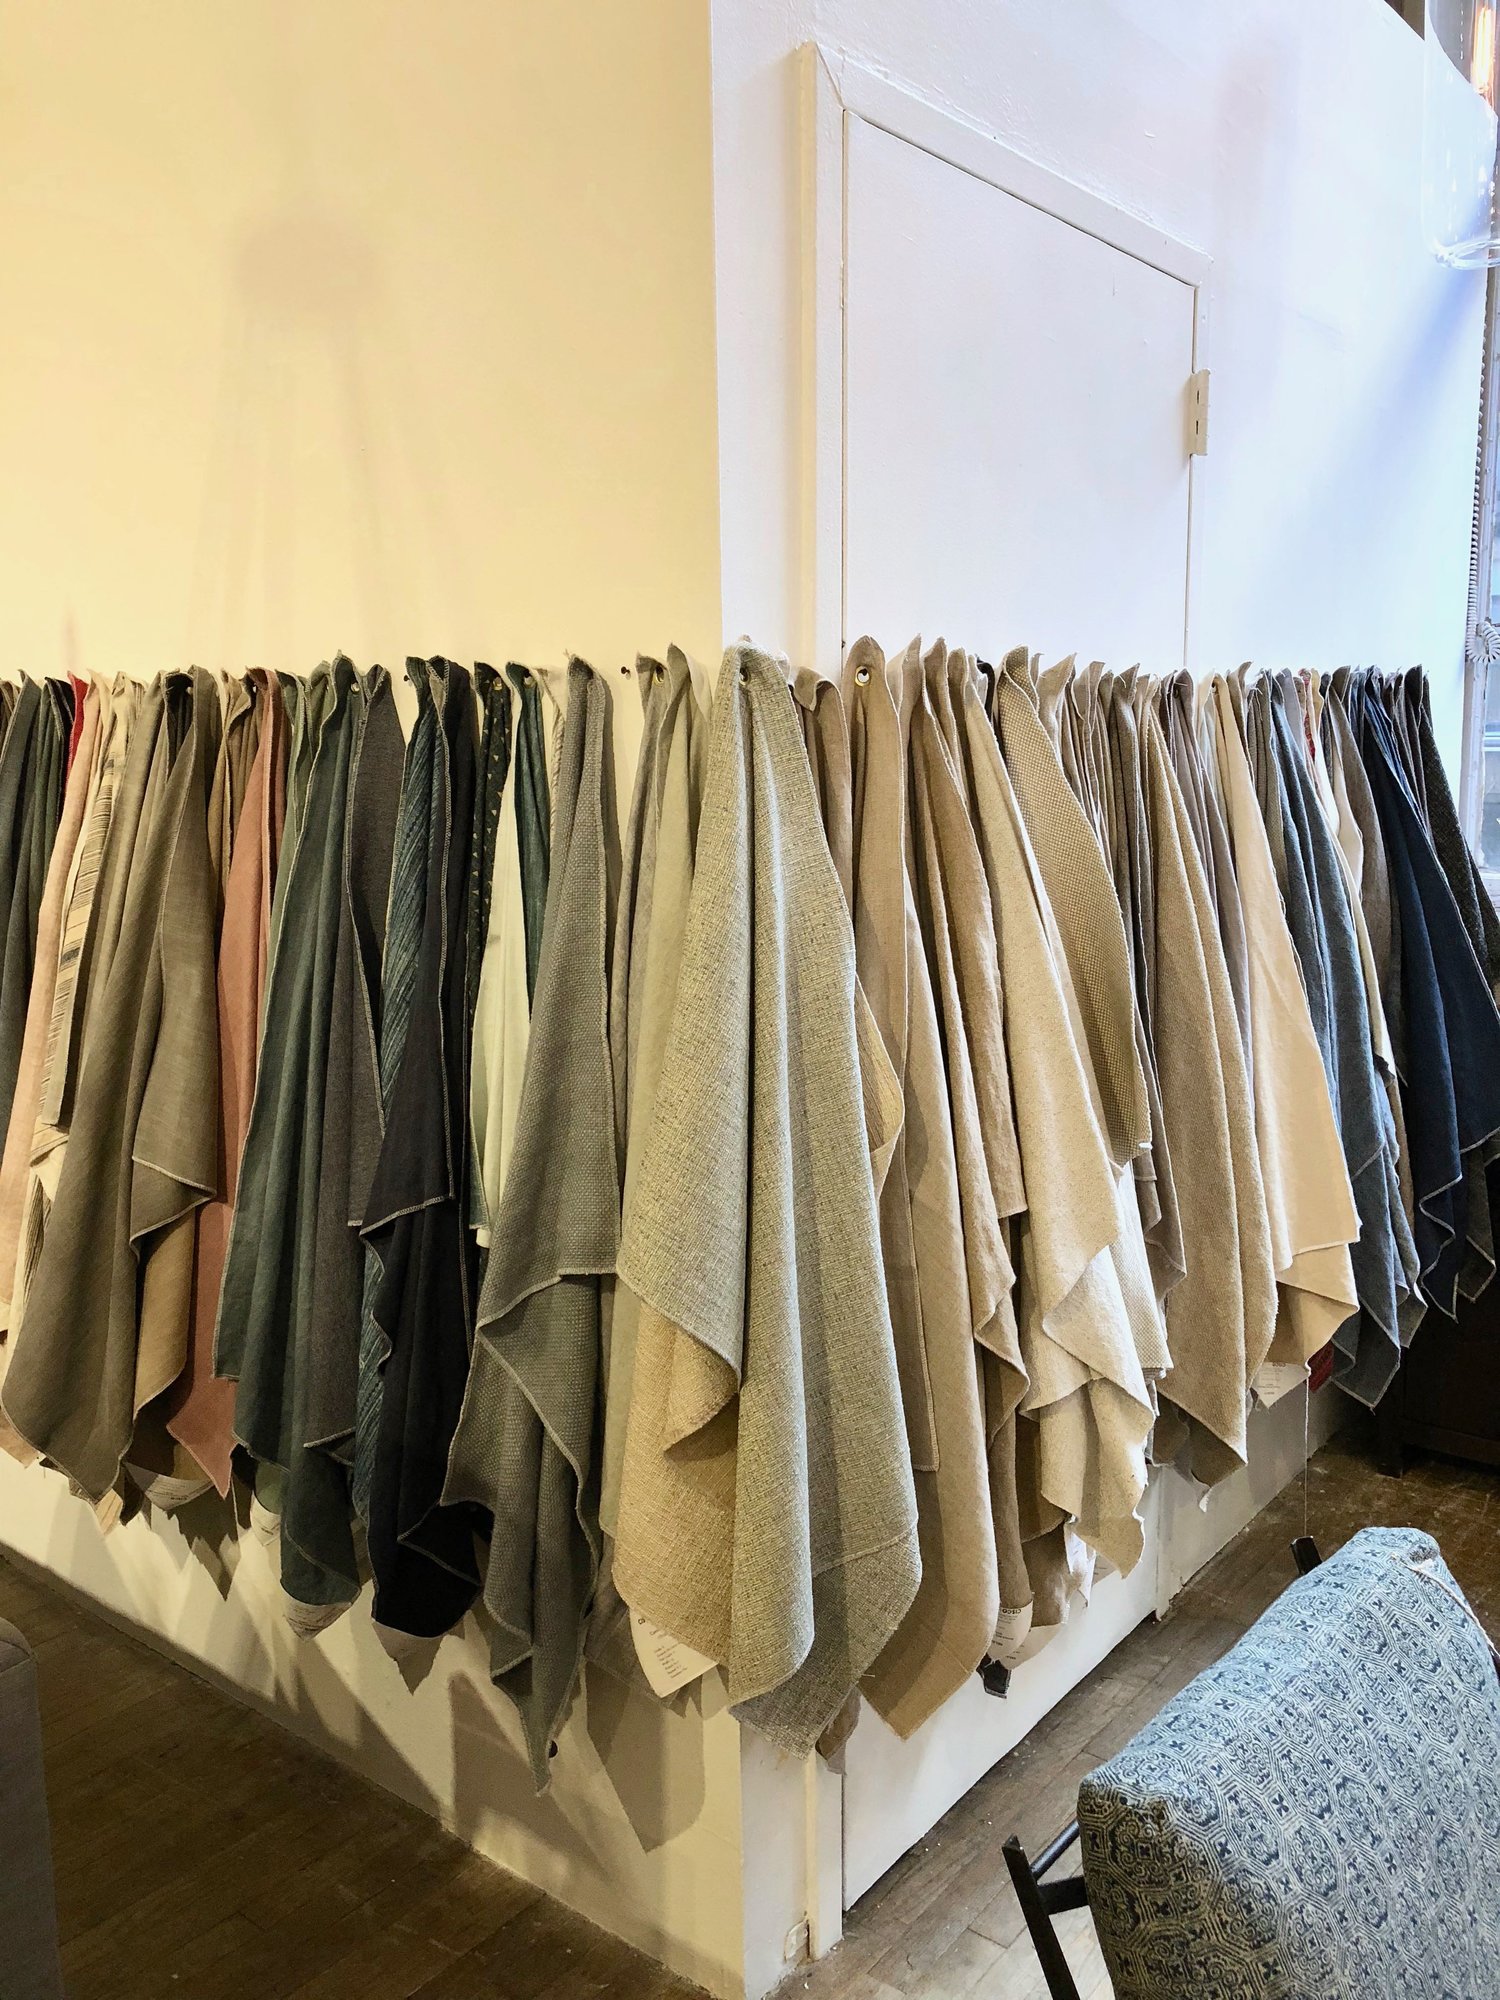 So many fabrics to choose from.